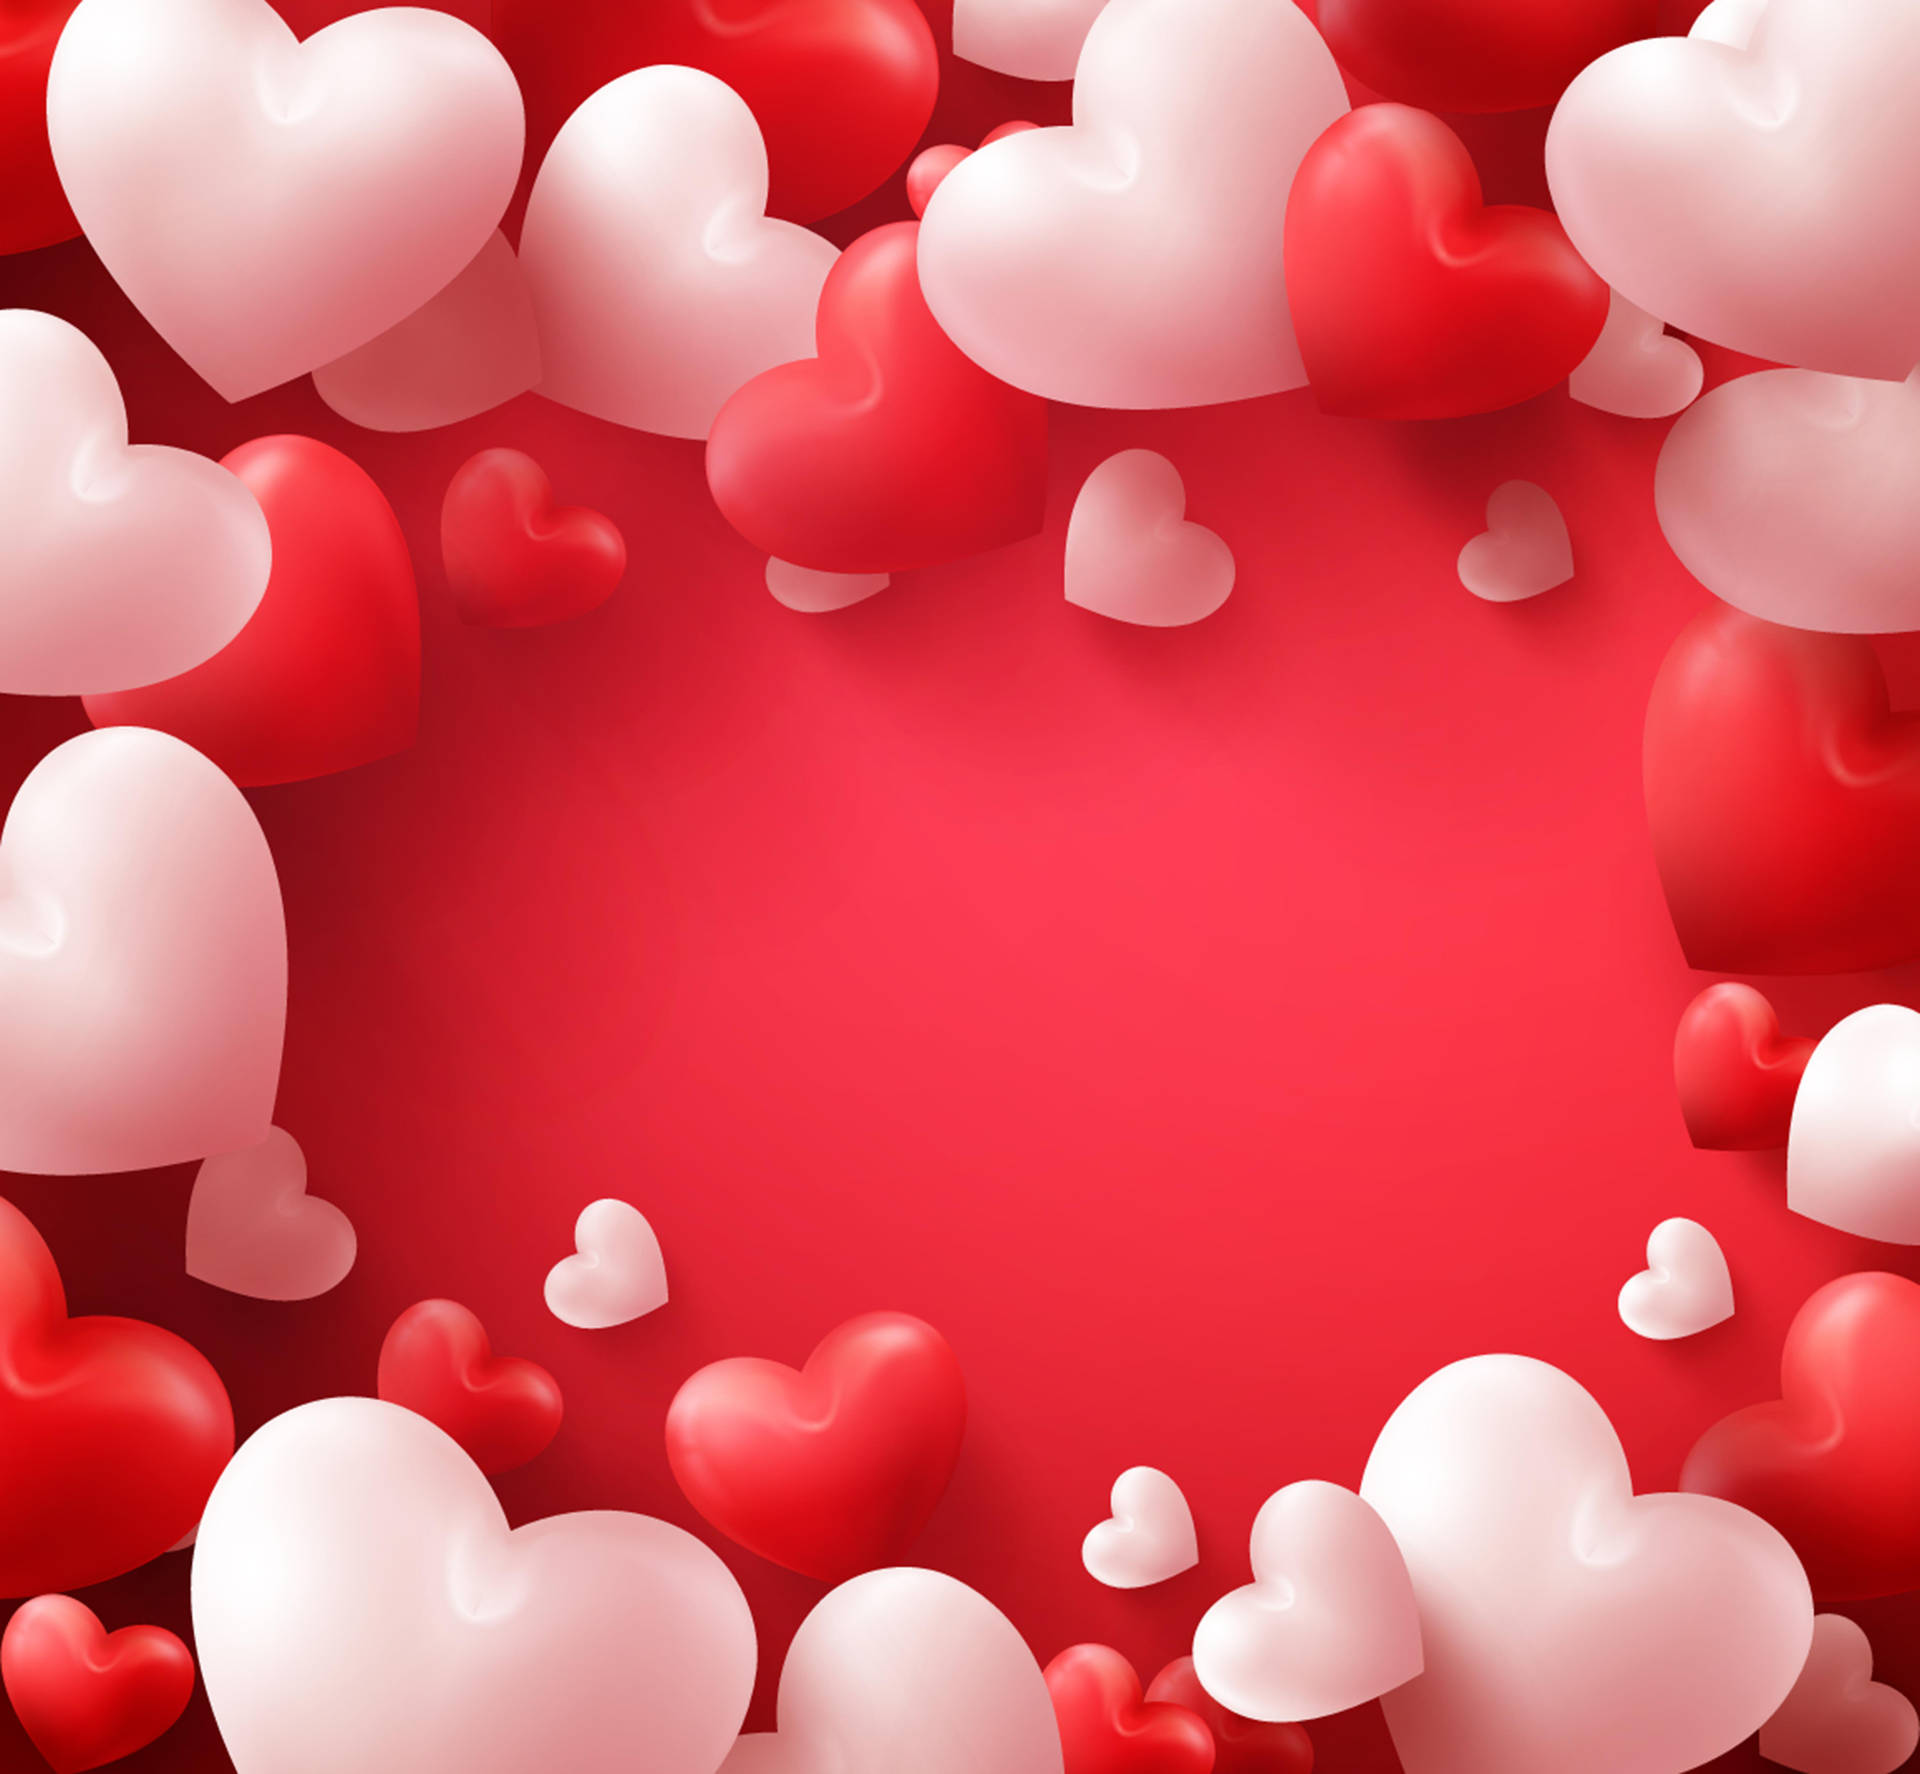 Globosen Forma De Corazón De San Valentín. Fondo de pantalla